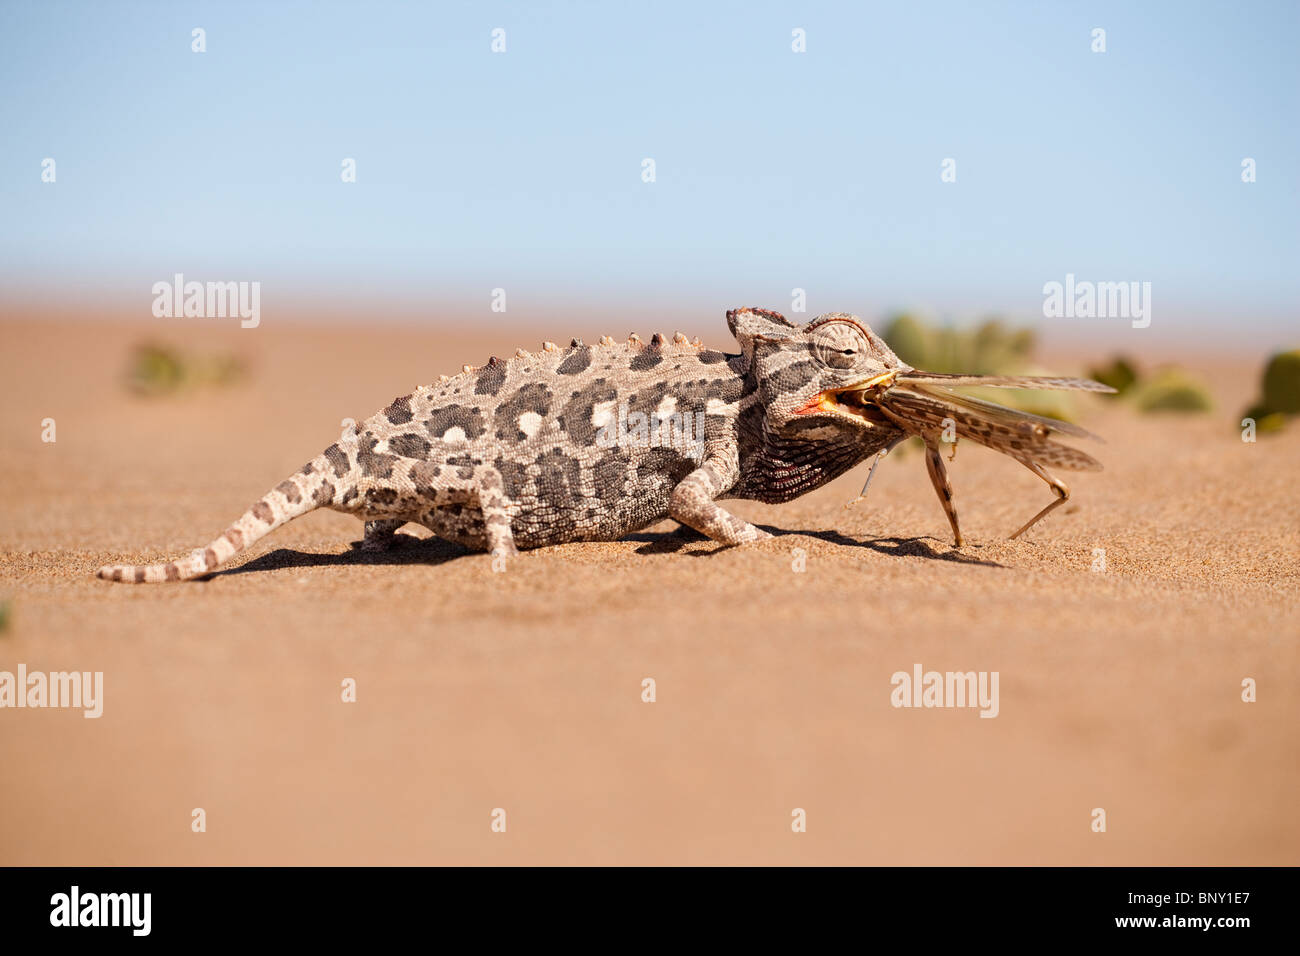 Namaqua chameleon, Chamaeleo namaquensis, eating grasshopper,Namib desert, Namibia, Africa Stock Photo